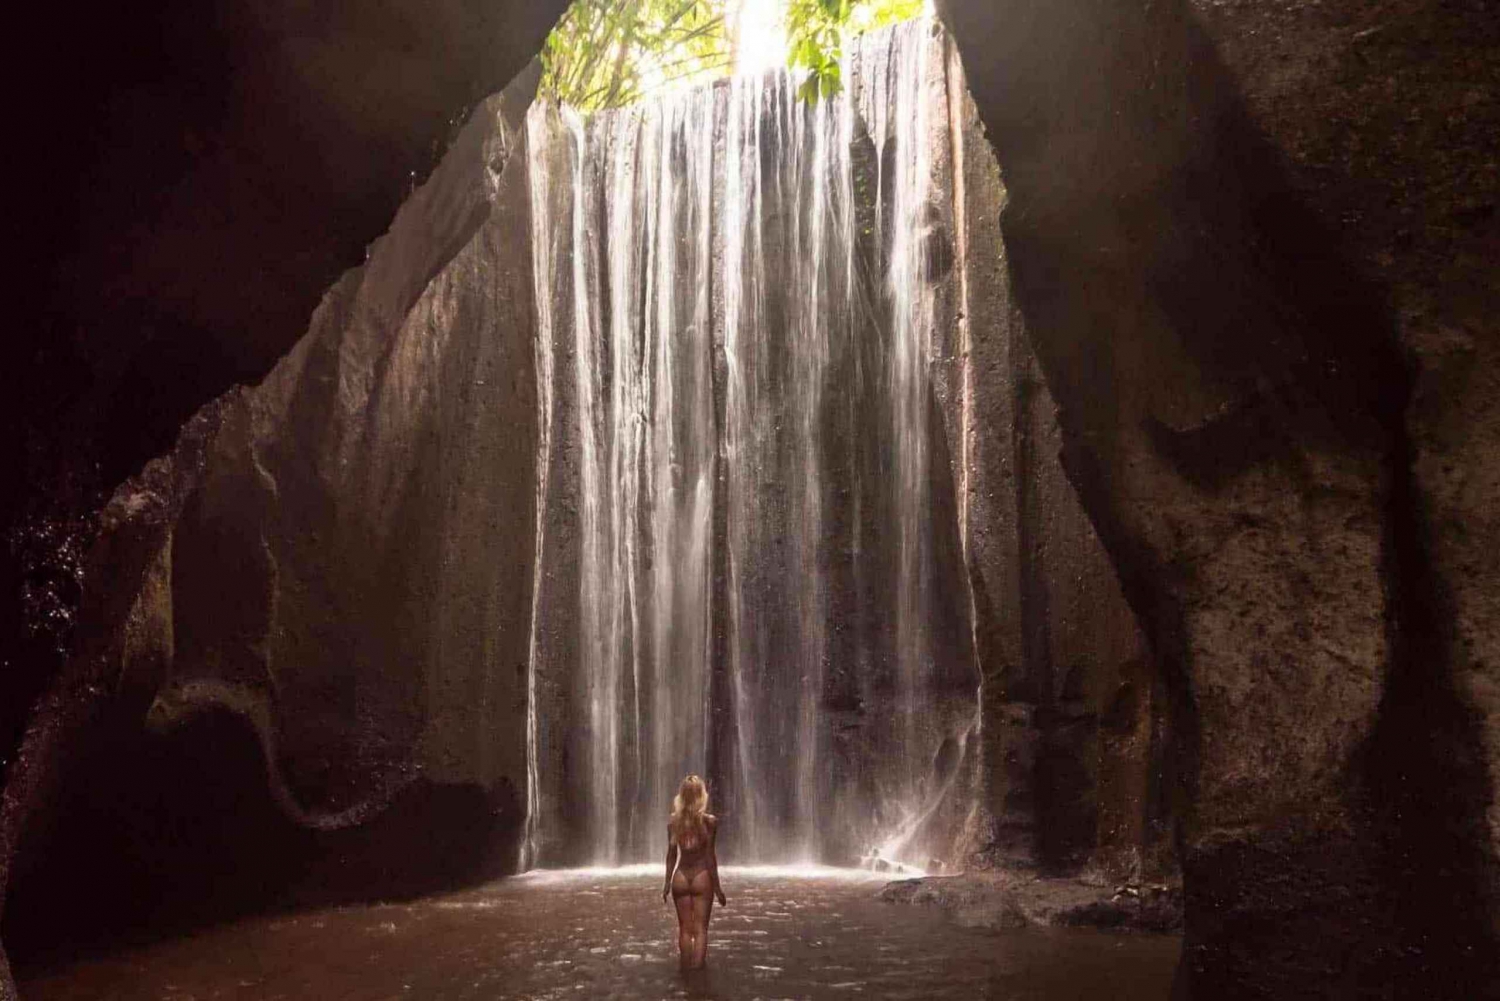 Bali's Waterfall Explore Tibumana, Goa Raja, Kanto Lampo